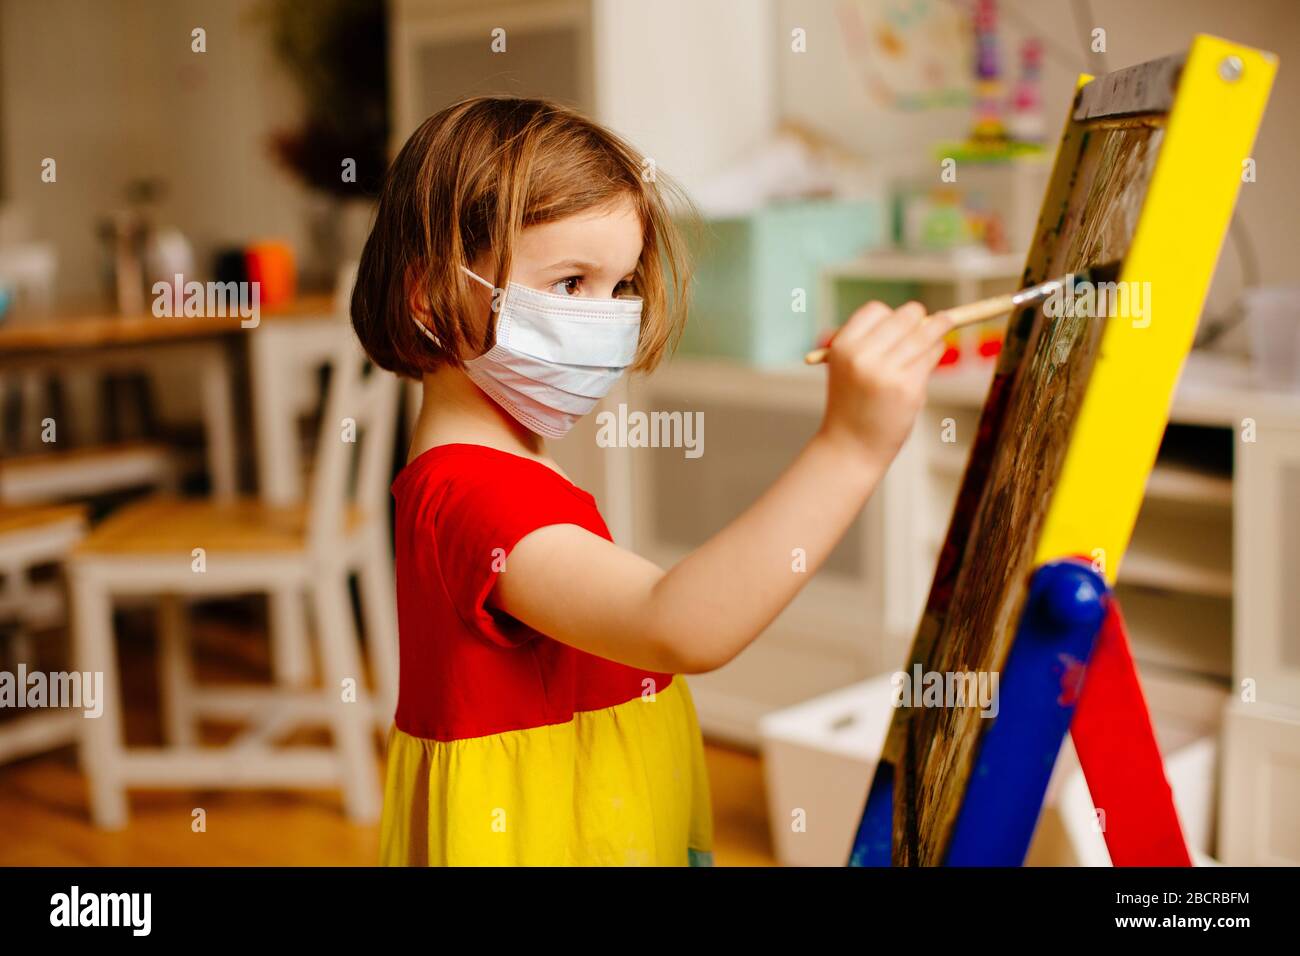 Retrato de un pequeño niño preescolar con máscara facial contra el coronavirus, pintando en una caballete de arte en casa Foto de stock